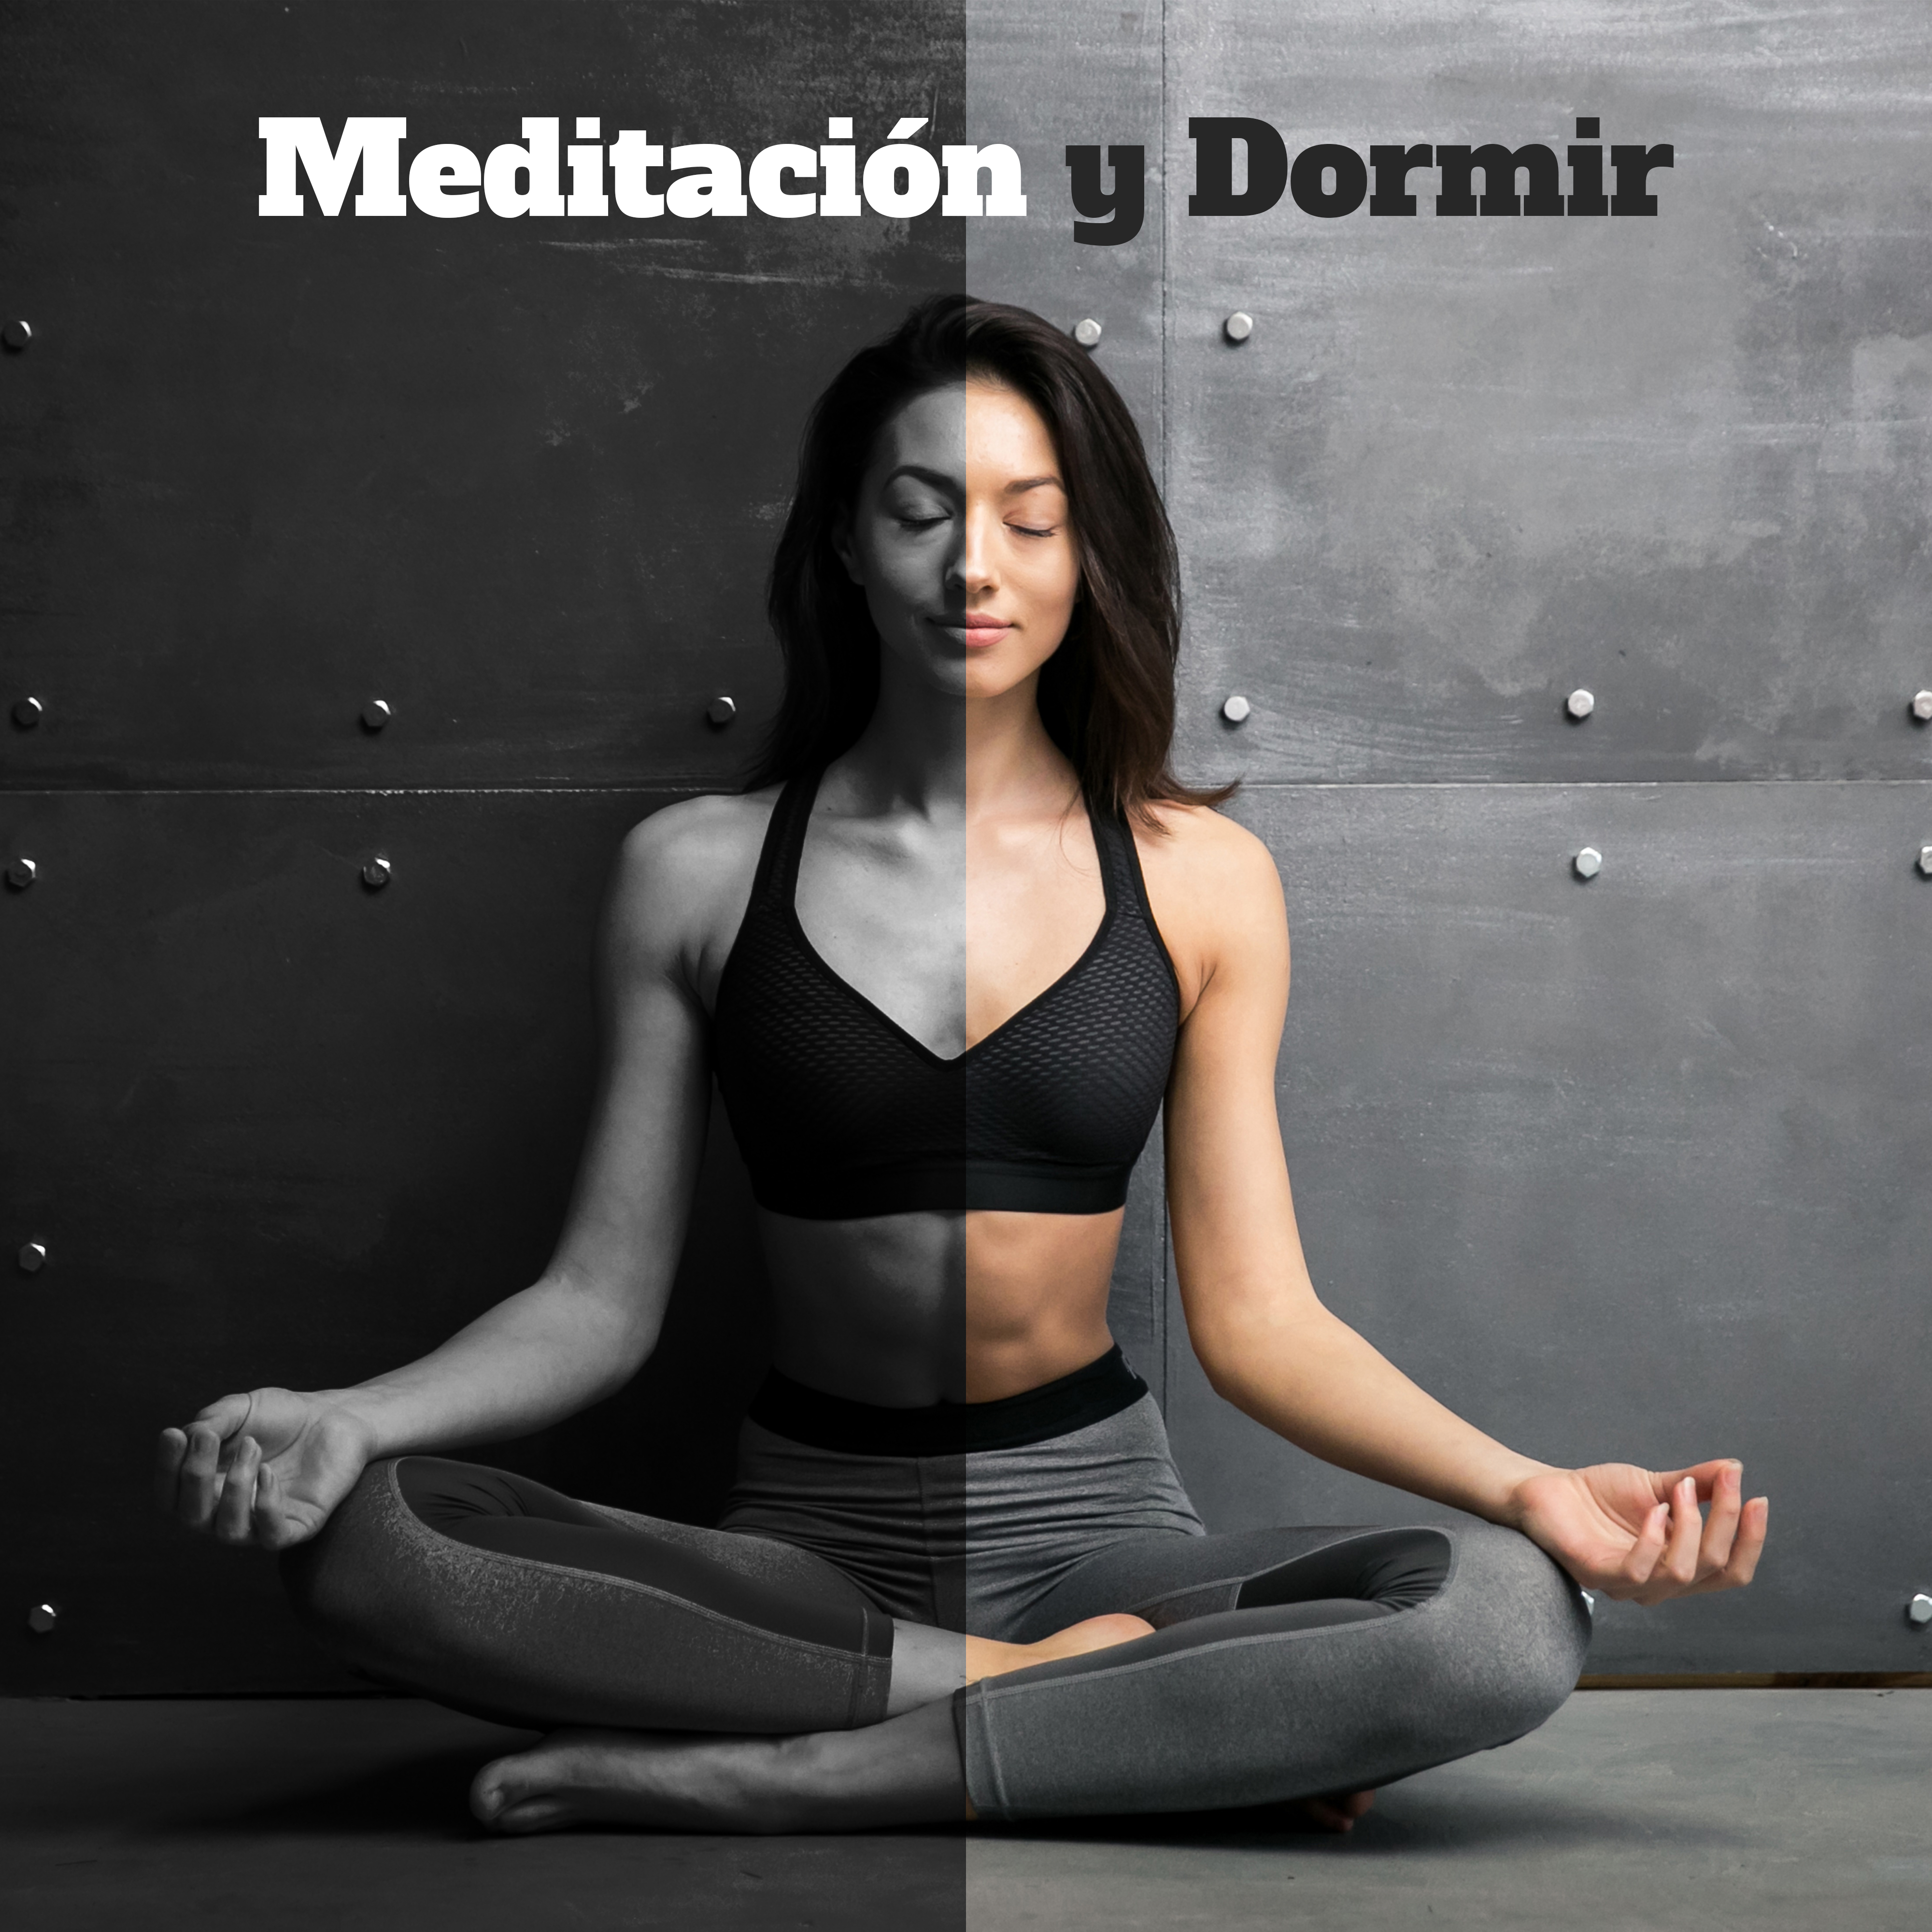 Meditacio n y Dormir: Mu sica New Age para la Relajacio n, Meditacio n Profunda, Armonia Interior, Sue o Profundo, Yoga, Reiki, Zen, Musica de Flauta